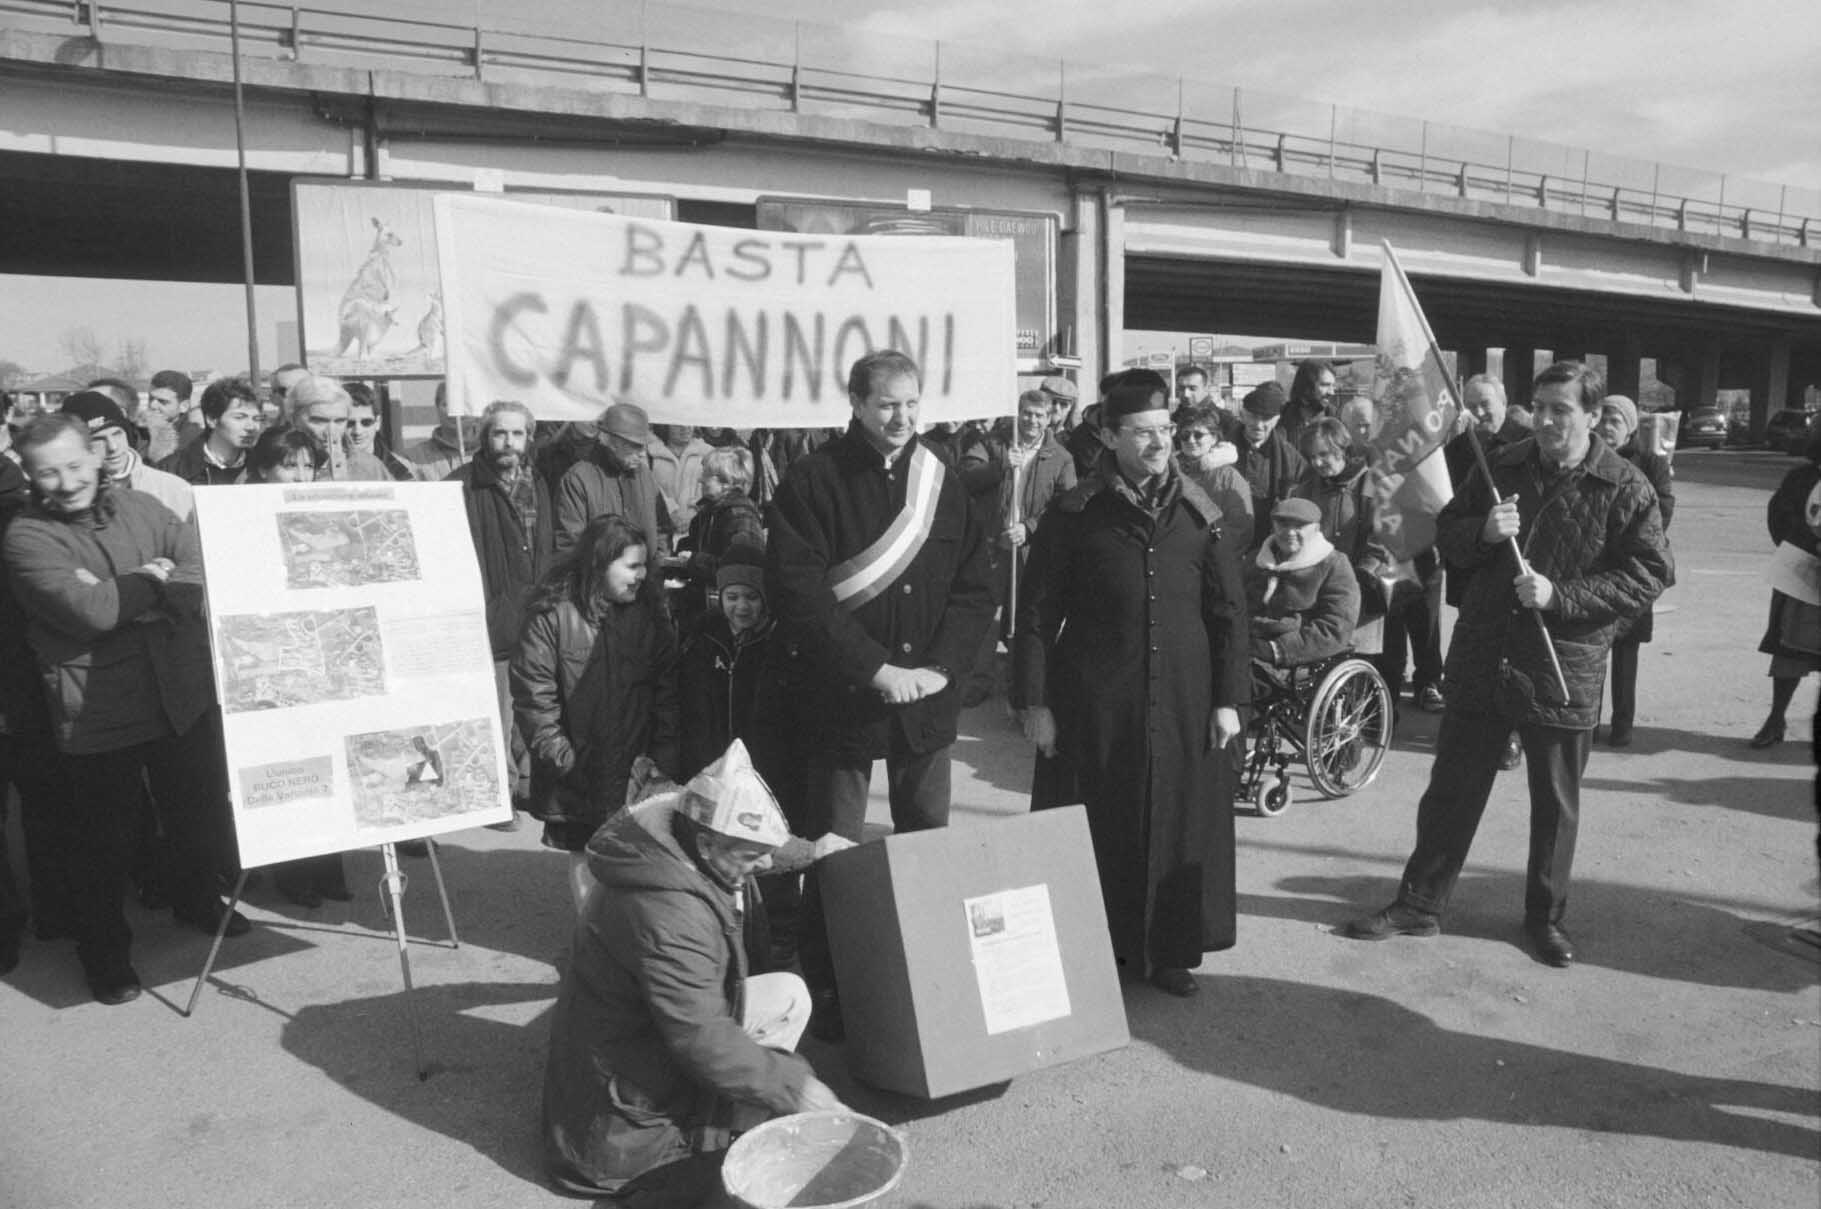 Protesta contro nuovi capannoni ad Asti in corso Casale